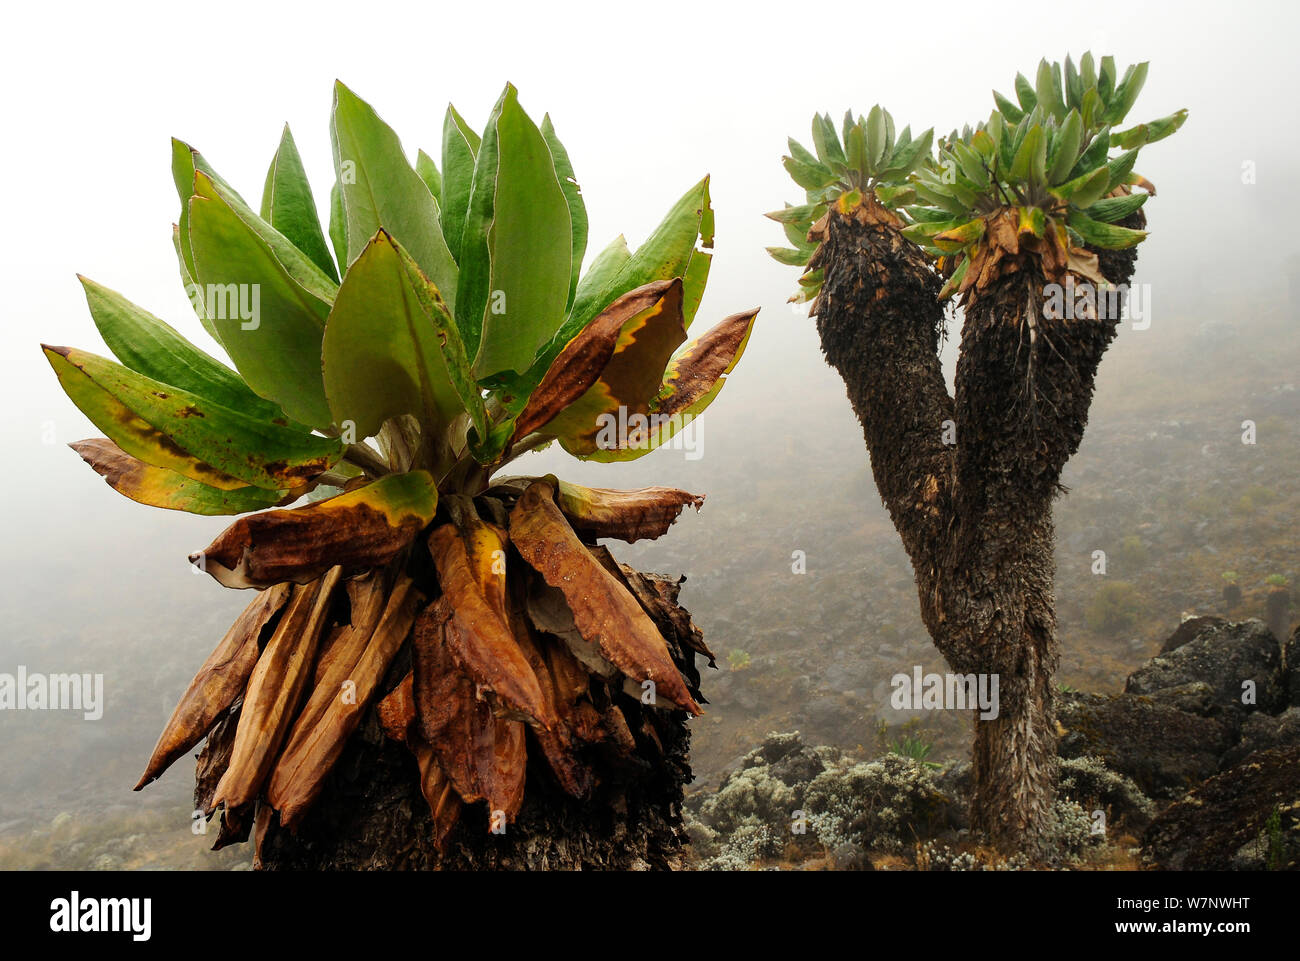 Giant groundsel (Dendrosenecio kilimanjari) plants, endemic to the higher altitude zones of Kilimanjaro in subalpine forests, Mount Kilimanjaro, Tanzania Stock Photo